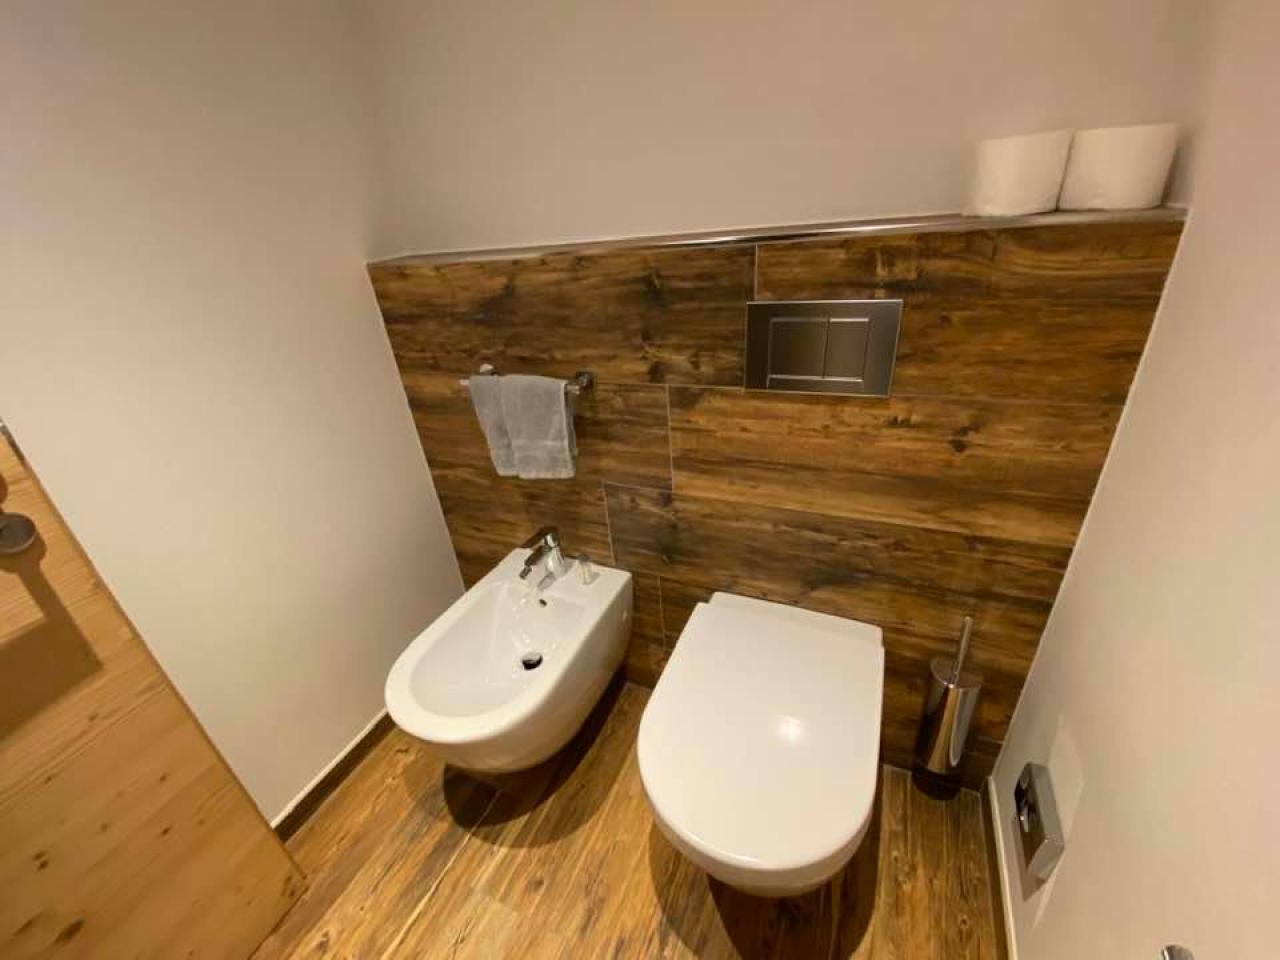 Misure scarico wc a pavimento e a parete: ci sono differenze?